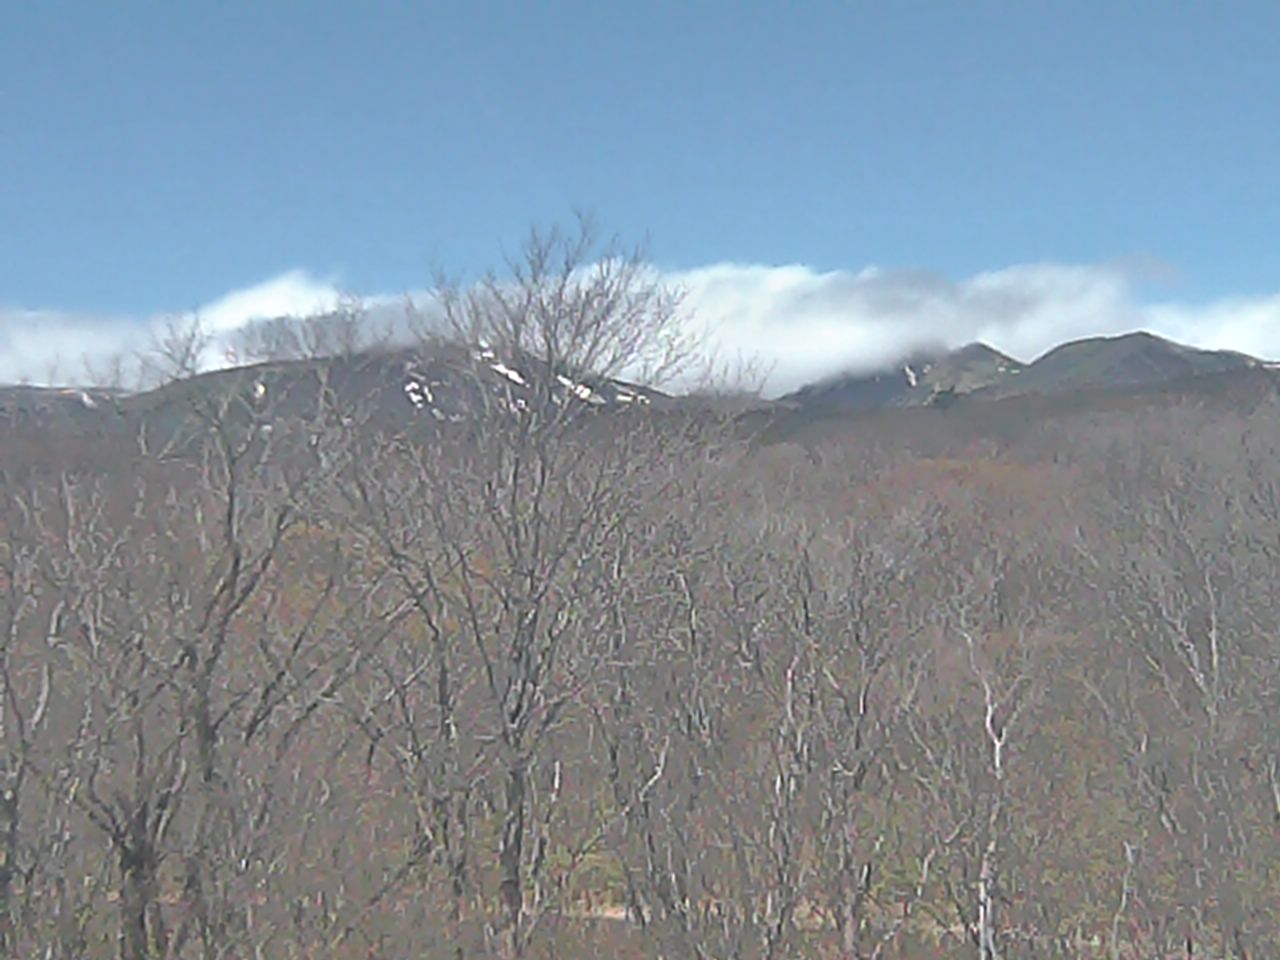 Mt. Nasudake as viewed from Nasu Heisei-no-mori Forest